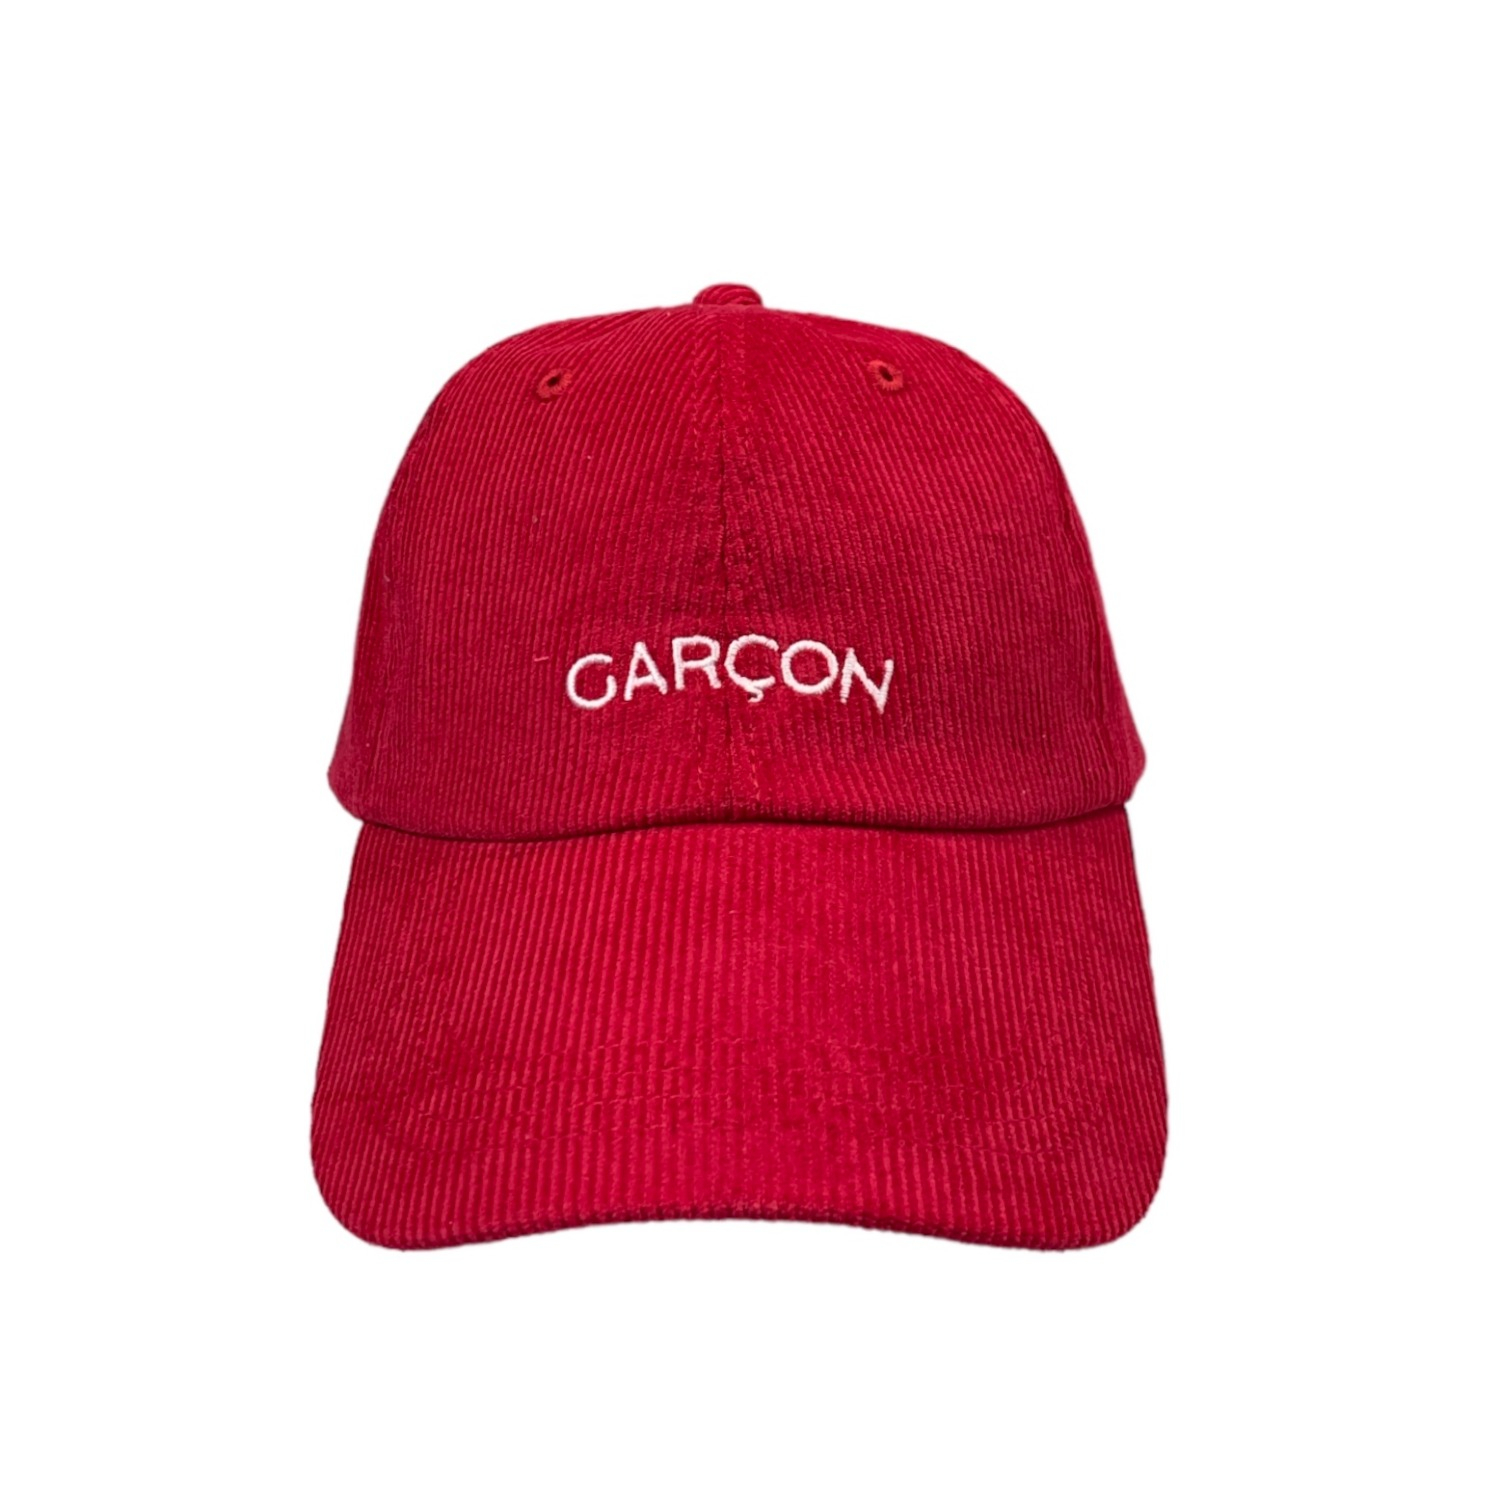 Garcon Cap (Red)